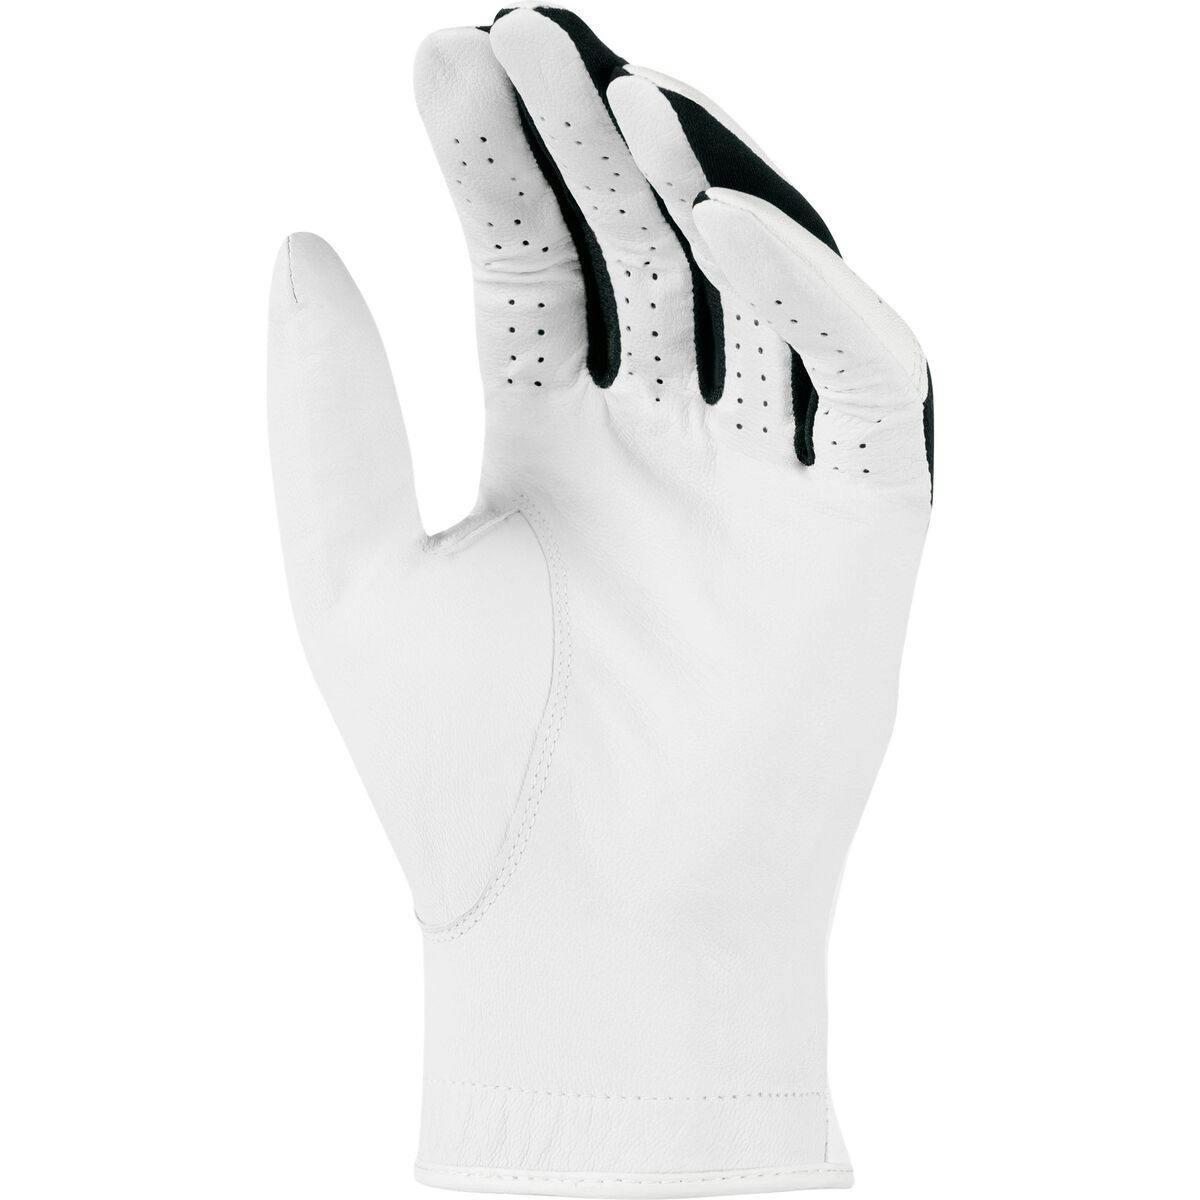 Nike Tech Extreme VI Men's Glove